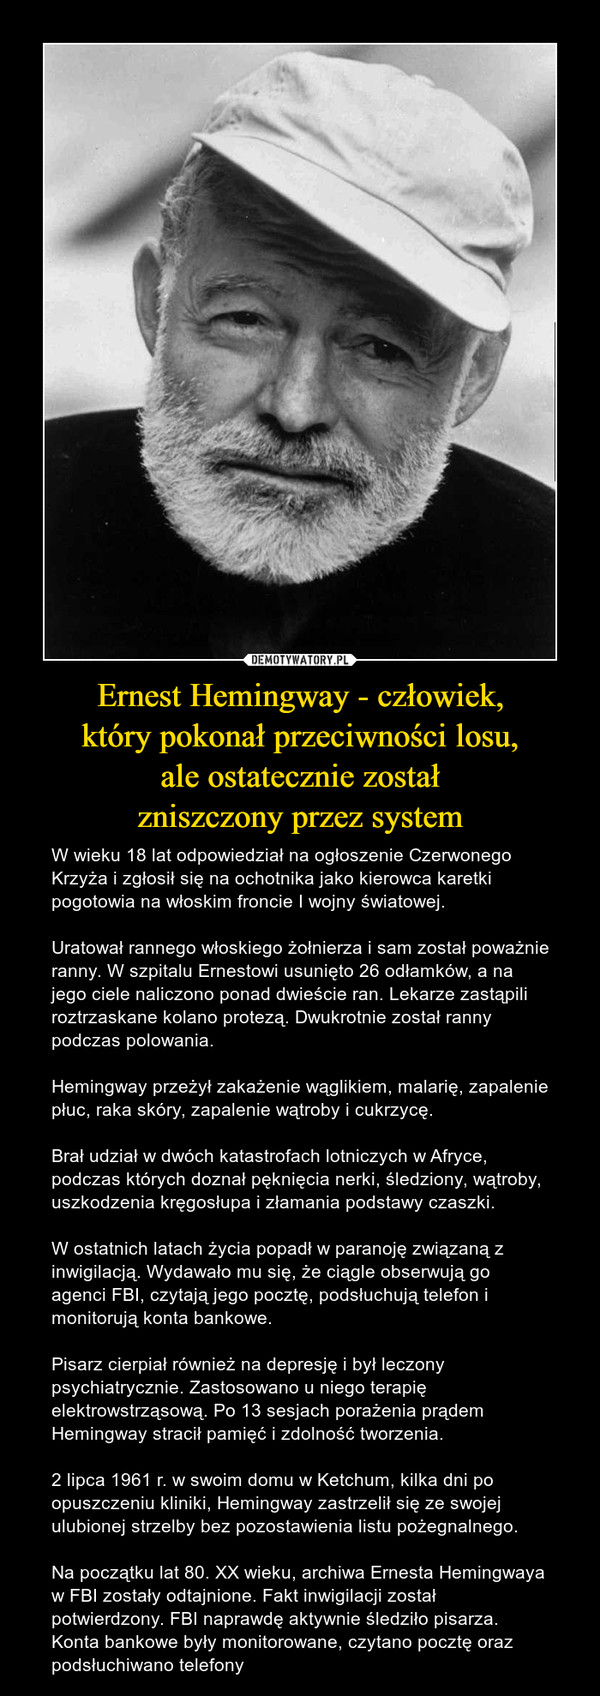 Ernest Hemingway - człowiek,który pokonał przeciwności losu,ale ostatecznie zostałzniszczony przez system – W wieku 18 lat odpowiedział na ogłoszenie Czerwonego Krzyża i zgłosił się na ochotnika jako kierowca karetki pogotowia na włoskim froncie I wojny światowej.Uratował rannego włoskiego żołnierza i sam został poważnie ranny. W szpitalu Ernestowi usunięto 26 odłamków, a na jego ciele naliczono ponad dwieście ran. Lekarze zastąpili roztrzaskane kolano protezą. Dwukrotnie został ranny podczas polowania.Hemingway przeżył zakażenie wąglikiem, malarię, zapalenie płuc, raka skóry, zapalenie wątroby i cukrzycę.Brał udział w dwóch katastrofach lotniczych w Afryce, podczas których doznał pęknięcia nerki, śledziony, wątroby, uszkodzenia kręgosłupa i złamania podstawy czaszki.W ostatnich latach życia popadł w paranoję związaną z inwigilacją. Wydawało mu się, że ciągle obserwują go agenci FBI, czytają jego pocztę, podsłuchują telefon i monitorują konta bankowe.Pisarz cierpiał również na depresję i był leczony psychiatrycznie. Zastosowano u niego terapię elektrowstrząsową. Po 13 sesjach porażenia prądem Hemingway stracił pamięć i zdolność tworzenia.2 lipca 1961 r. w swoim domu w Ketchum, kilka dni po opuszczeniu kliniki, Hemingway zastrzelił się ze swojej ulubionej strzelby bez pozostawienia listu pożegnalnego.Na początku lat 80. XX wieku, archiwa Ernesta Hemingwaya w FBI zostały odtajnione. Fakt inwigilacji został potwierdzony. FBI naprawdę aktywnie śledziło pisarza. Konta bankowe były monitorowane, czytano pocztę oraz podsłuchiwano telefony 